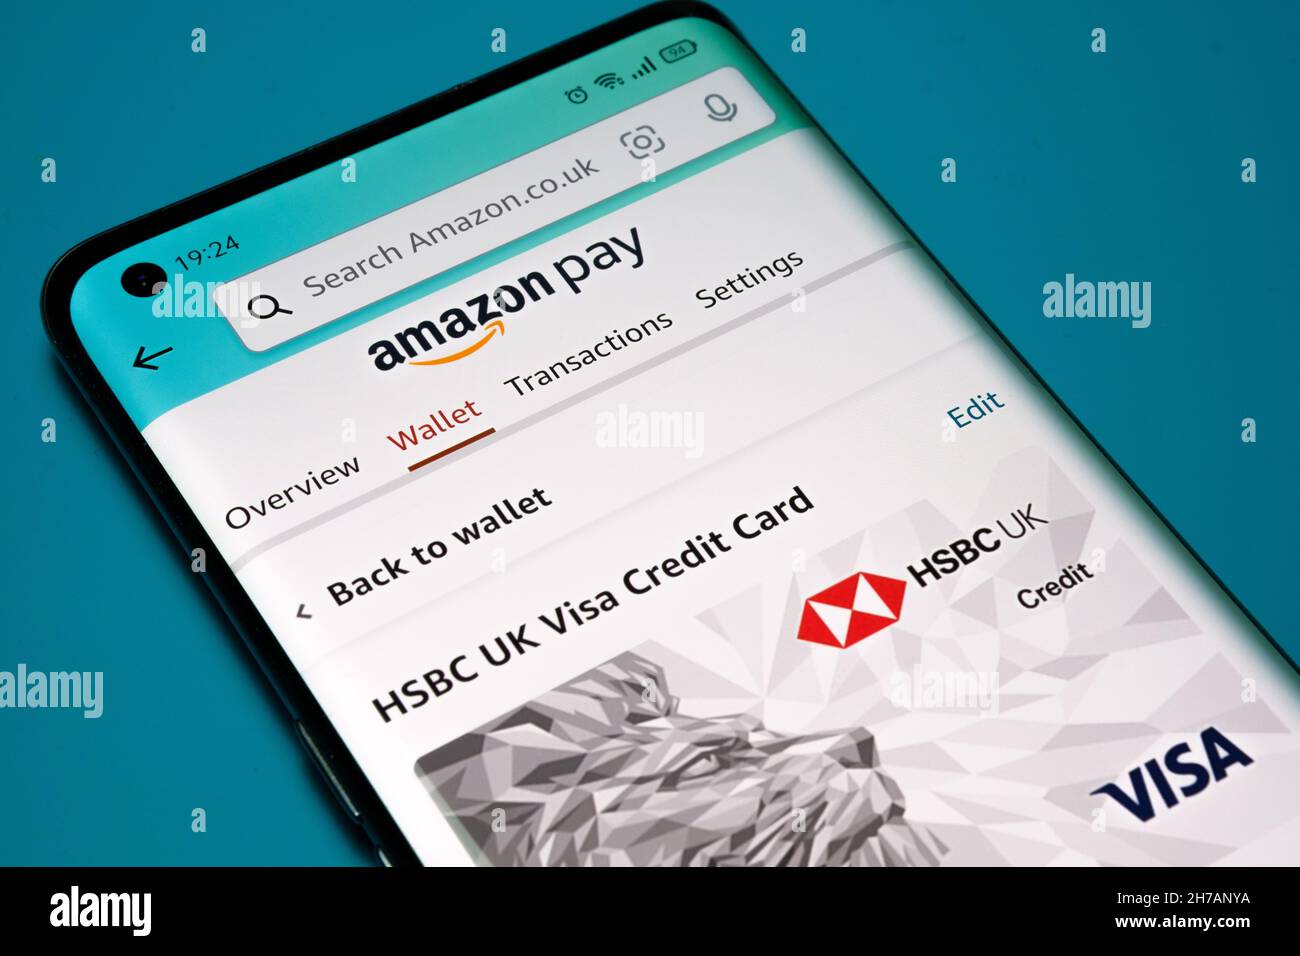 La CARTA DI CREDITO HSBC UK VISA viene visualizzata nella sezione Amazon Pay dell'app Amazon Shopping come metodo di pagamento principale. Concetto. Stafford, Regno Unito, 21 novembre 202 Foto Stock